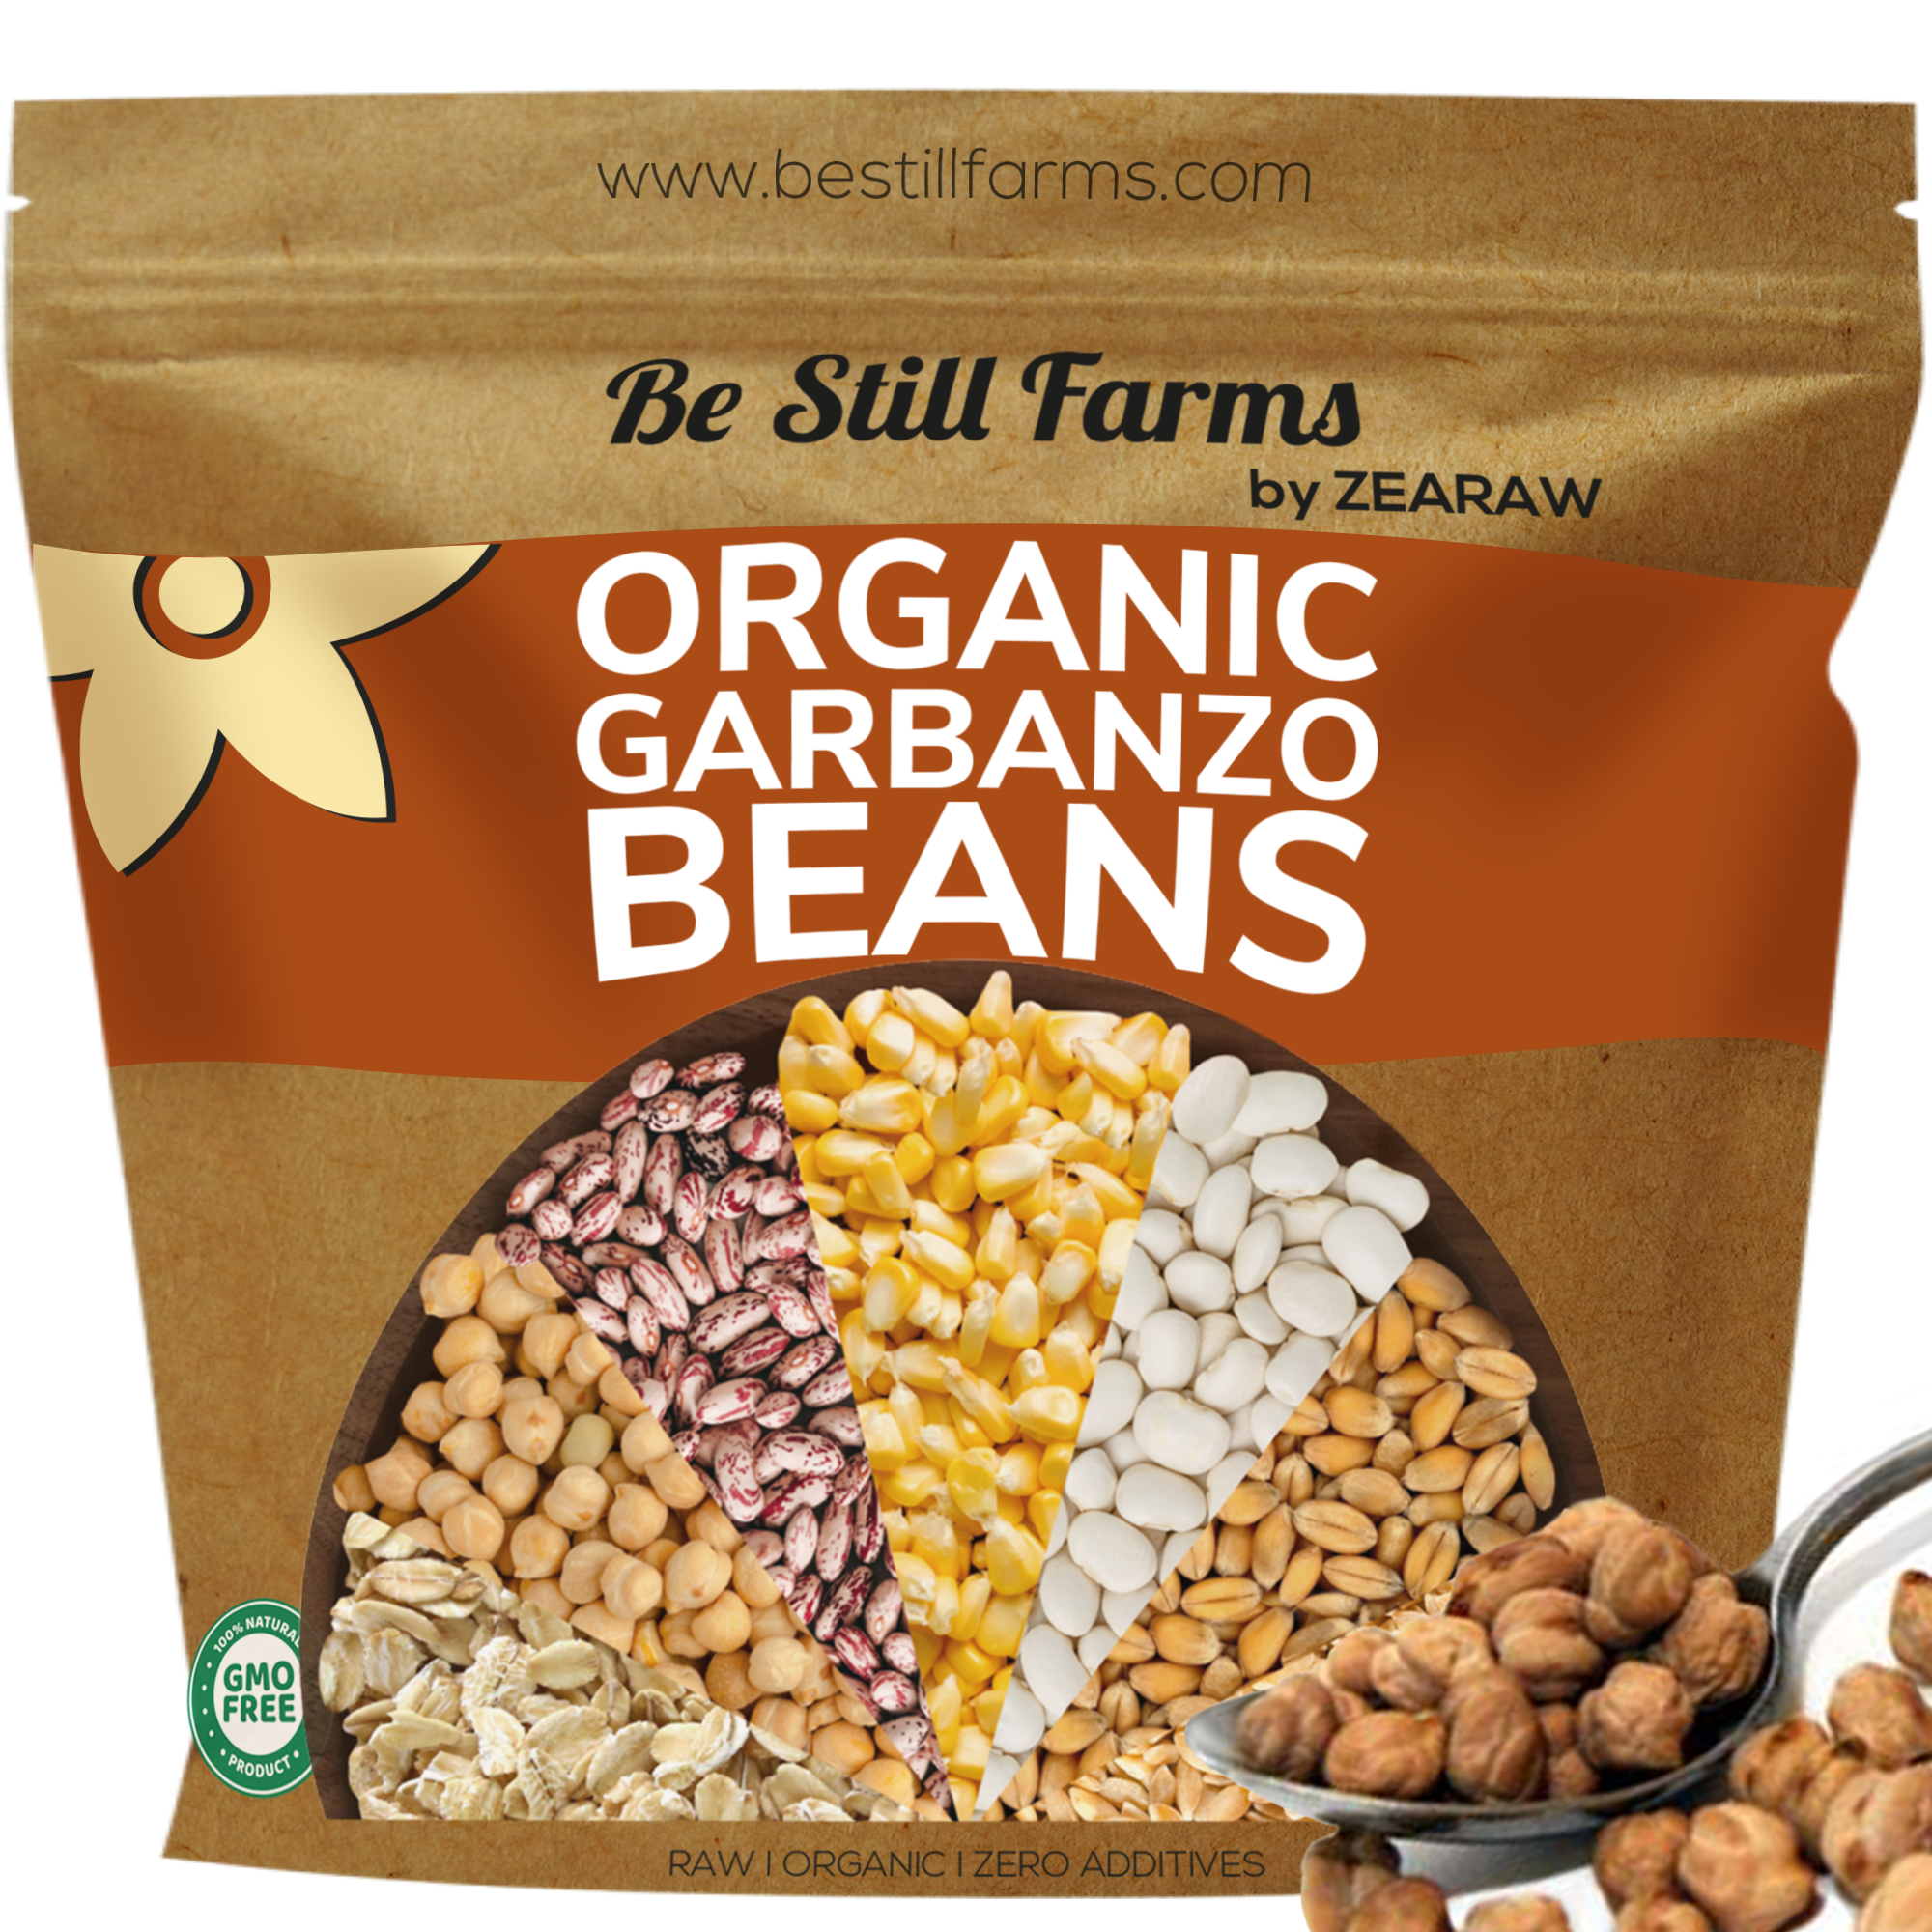 Organic Garbanzo Beans - Be Still Farms